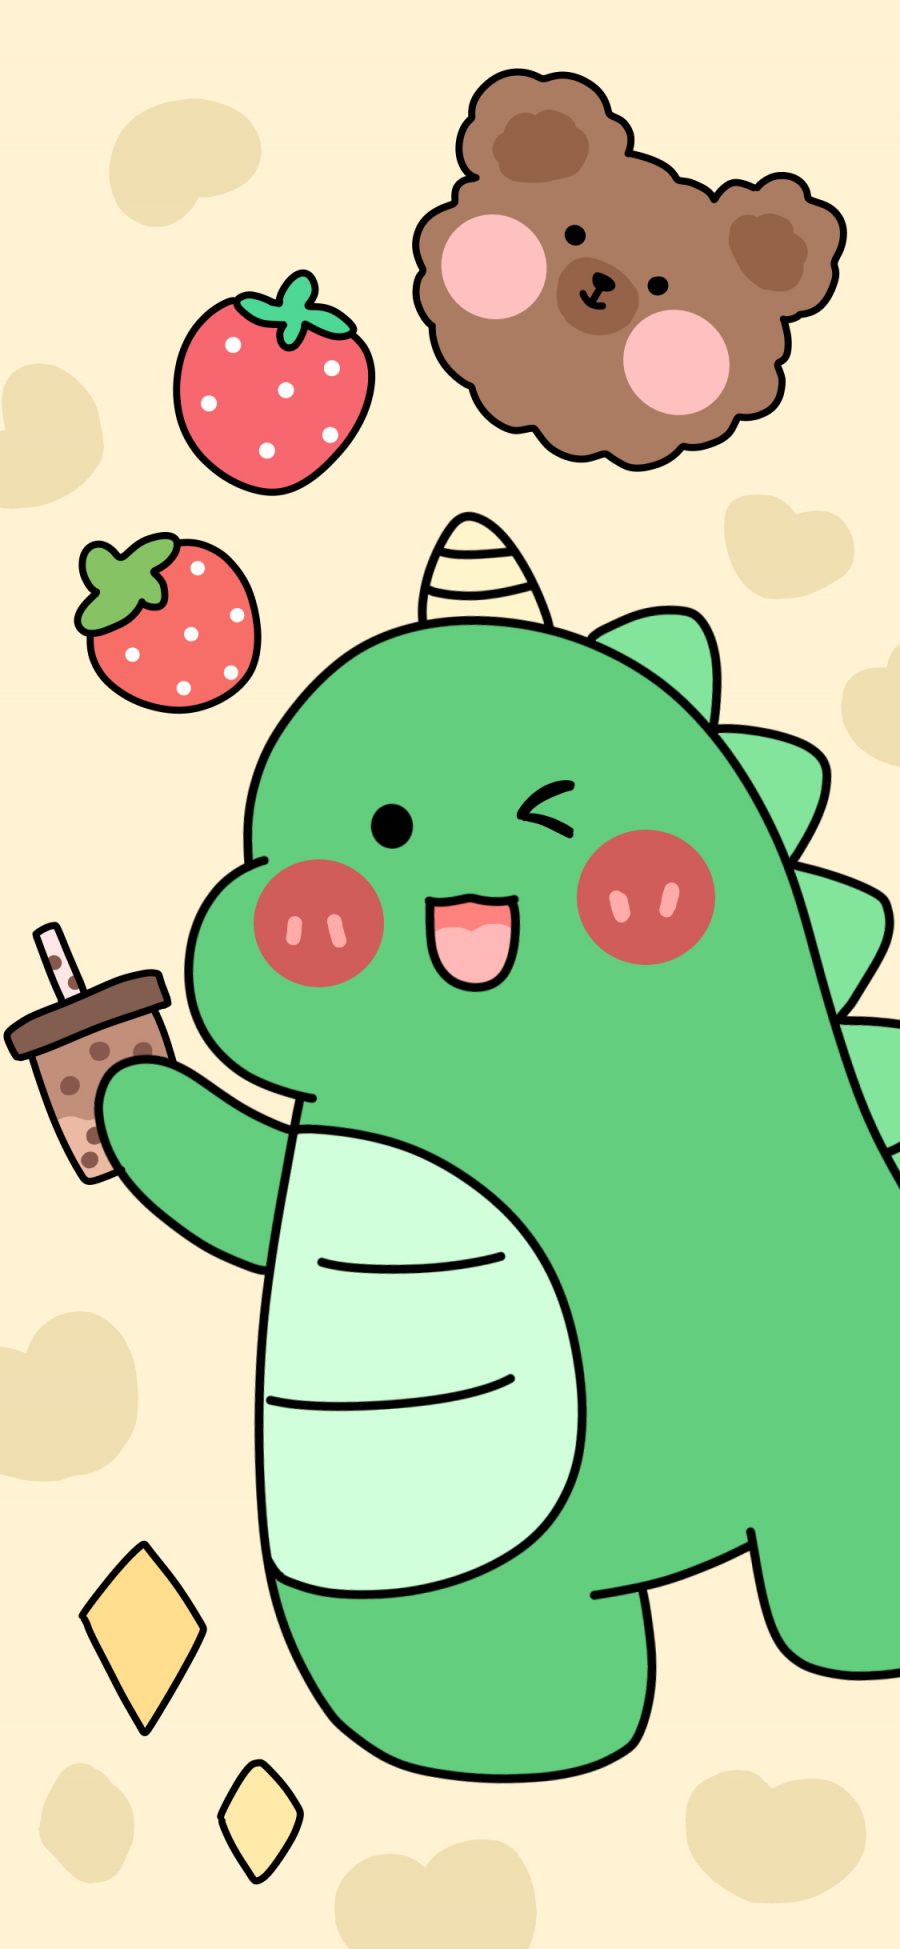 [2436×1125]小恐龙 可爱 草莓 卡通 爱心 苹果手机动漫壁纸图片